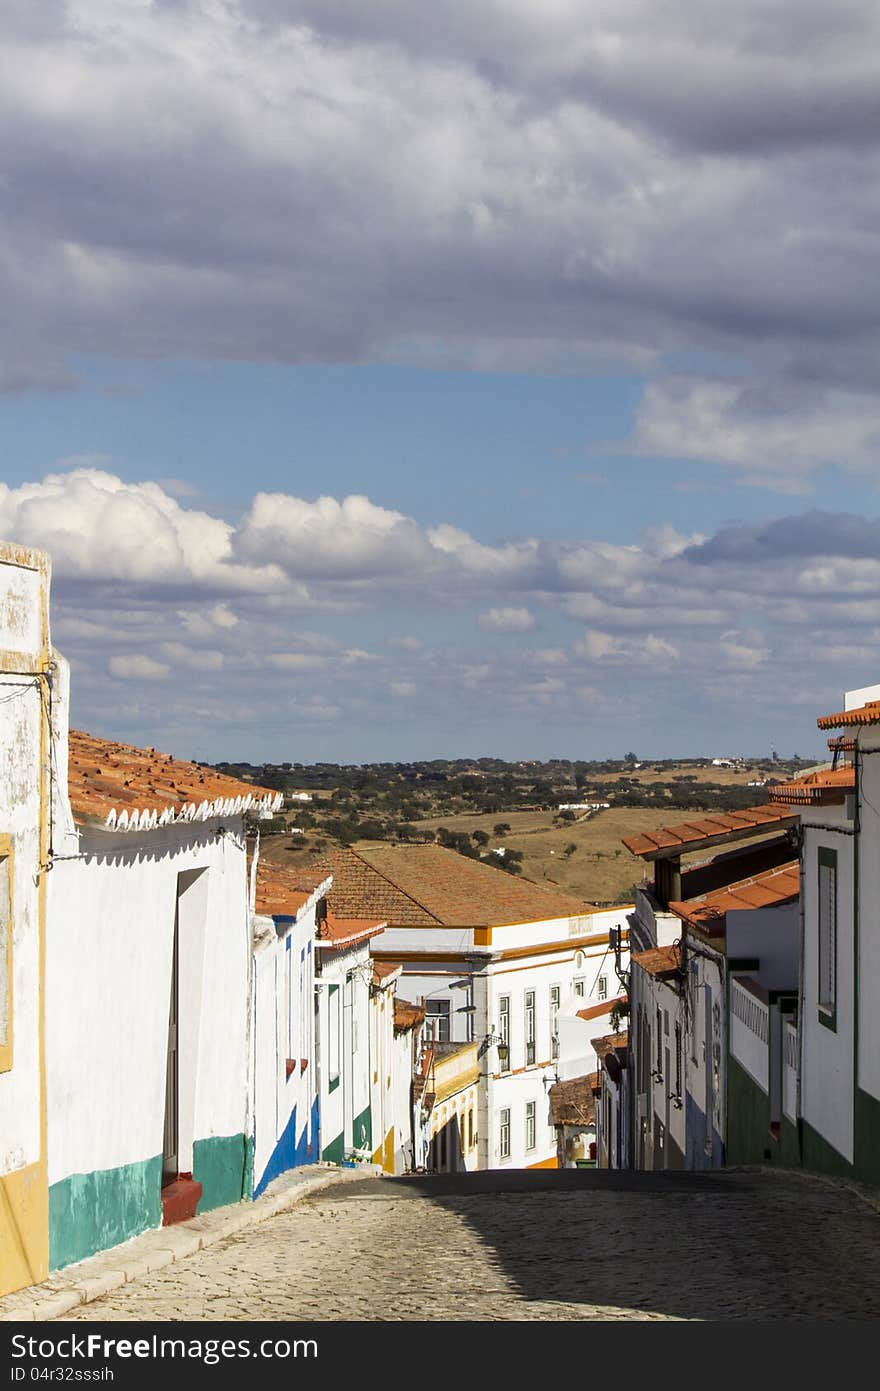 View of a small village in the Alentejo region located in the Algarve. View of a small village in the Alentejo region located in the Algarve.